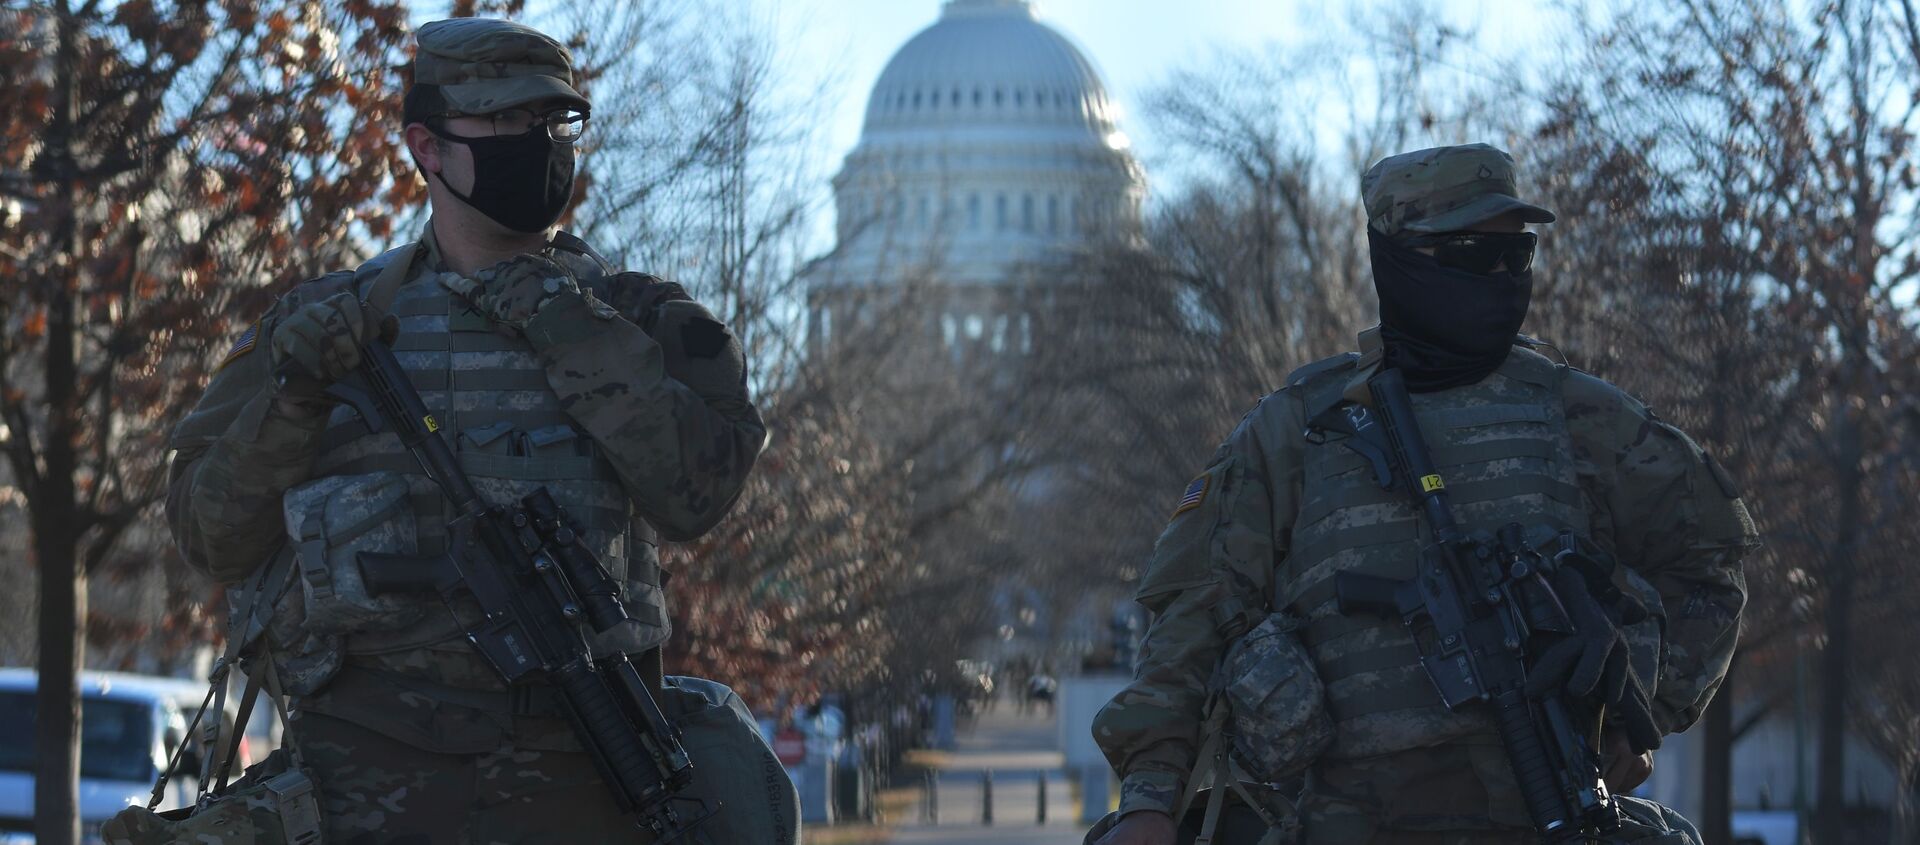 Сотрудники Национальной гвардии возле здания Капитолия в Вашингтоне - Sputnik Узбекистан, 1920, 21.01.2021